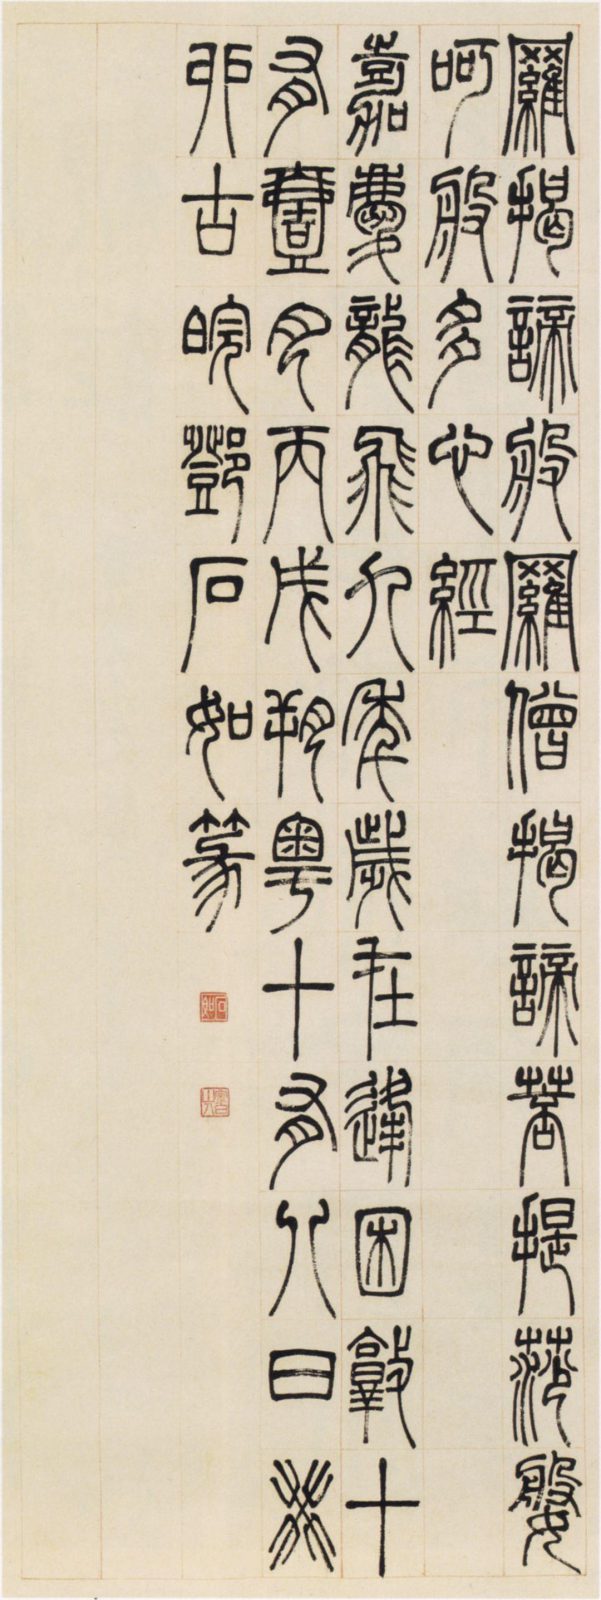 据说他是中国历史上第一位专职书法篆刻家，您知道是谁吗？